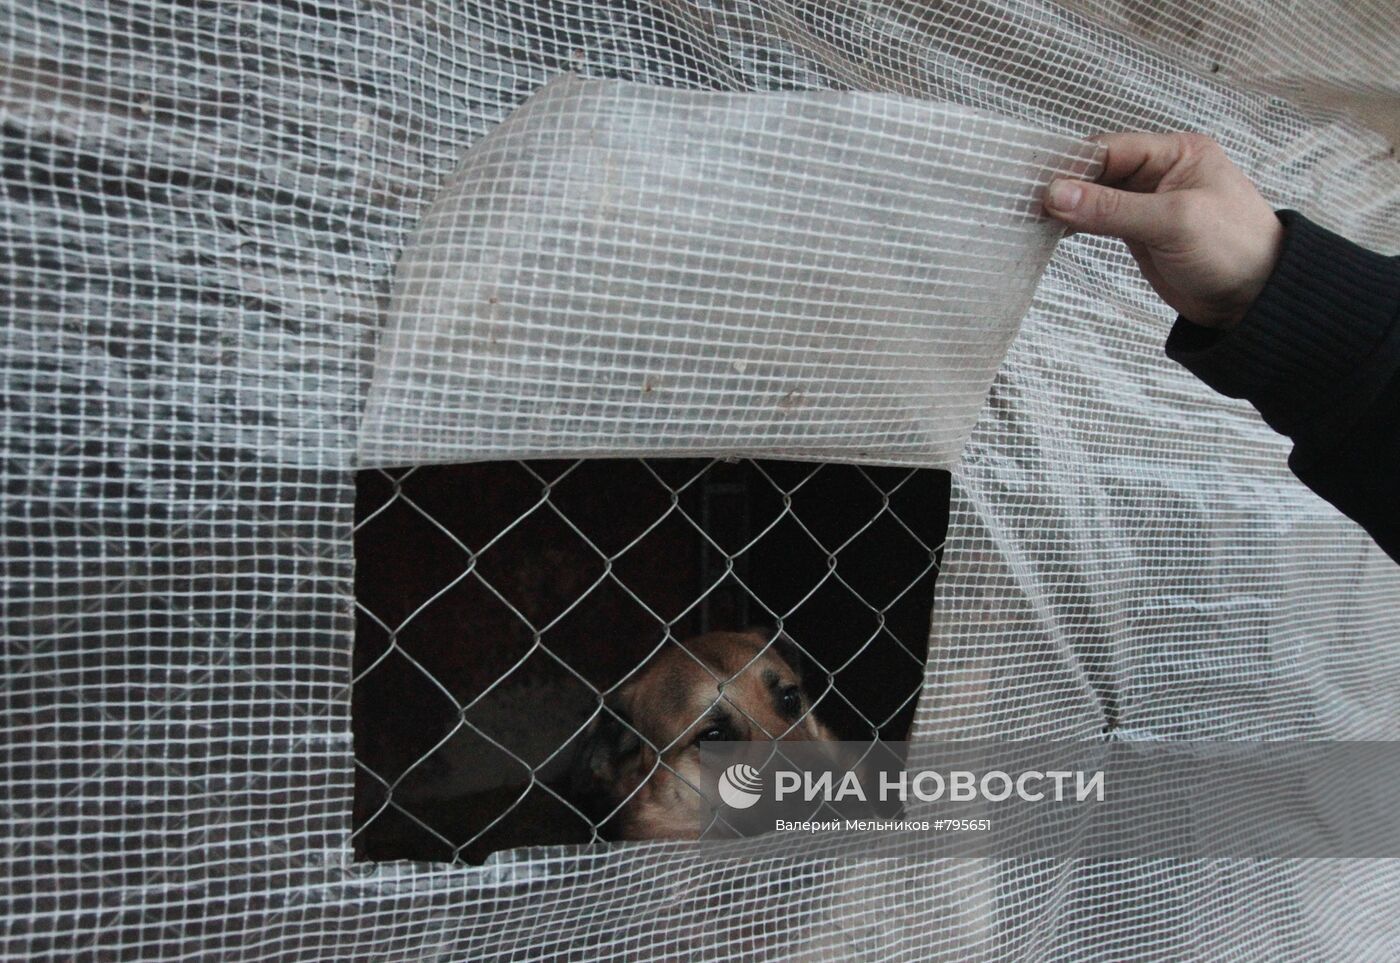 Приют для собак "В добрые руки" в Московской области